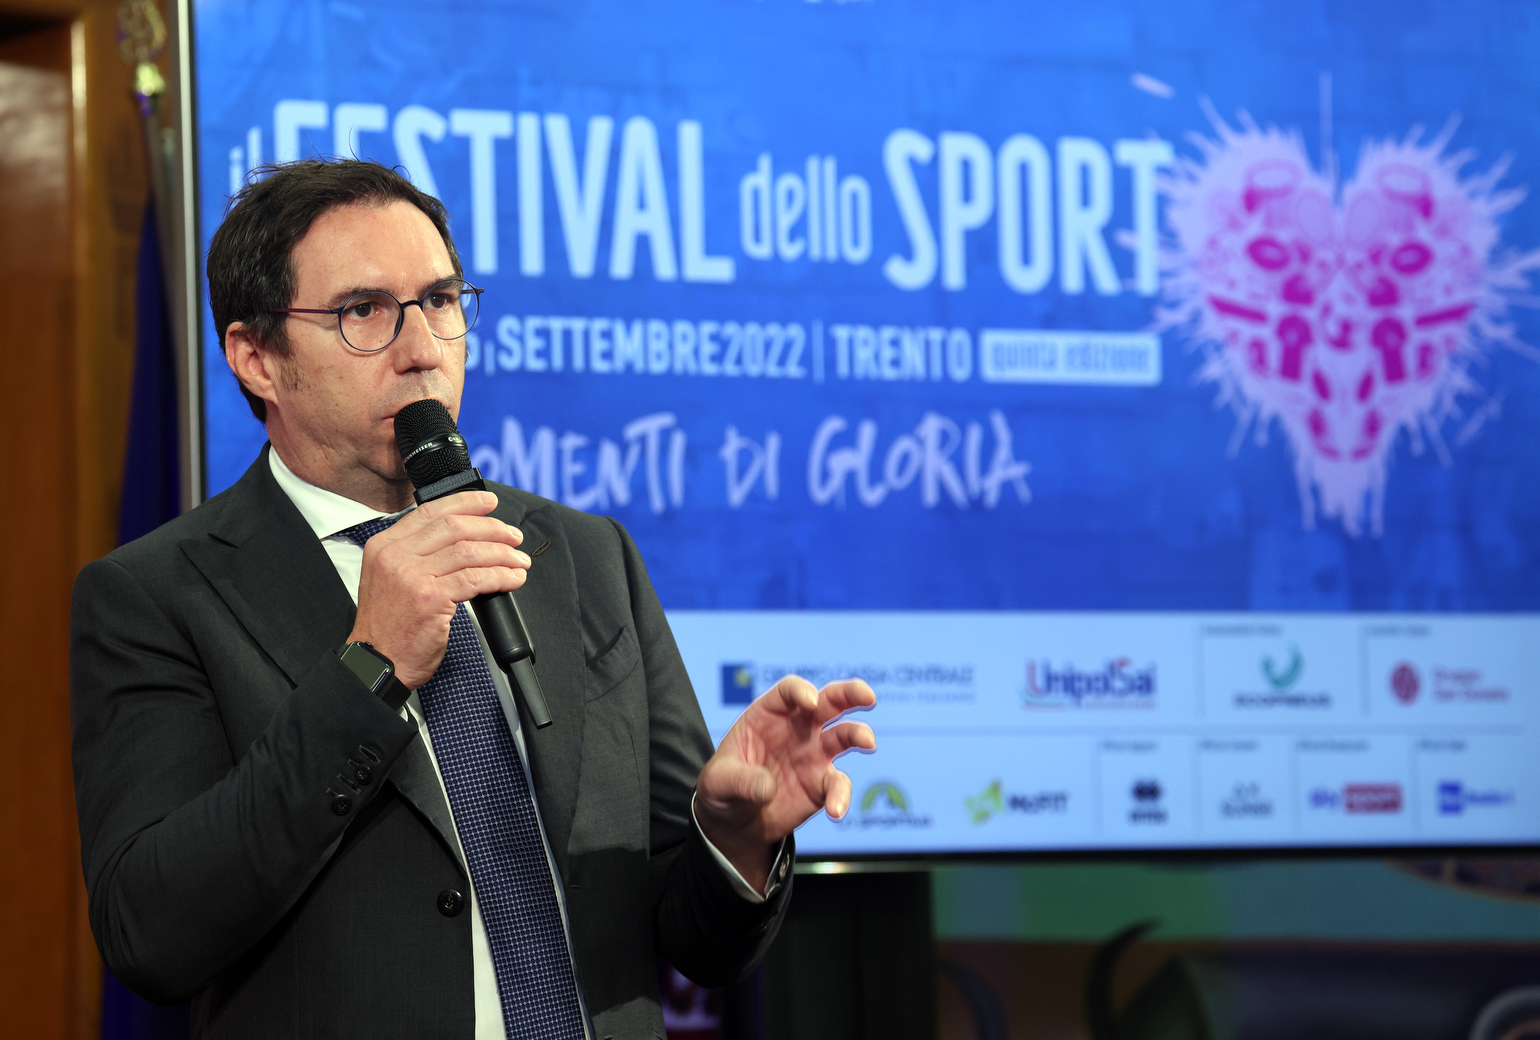 Festival dello Sport 2022: presso la Sala Depero della Provincia, il punto sul programma dedicato al tema “Momenti di gloria” (Lorenzo Battaiola)